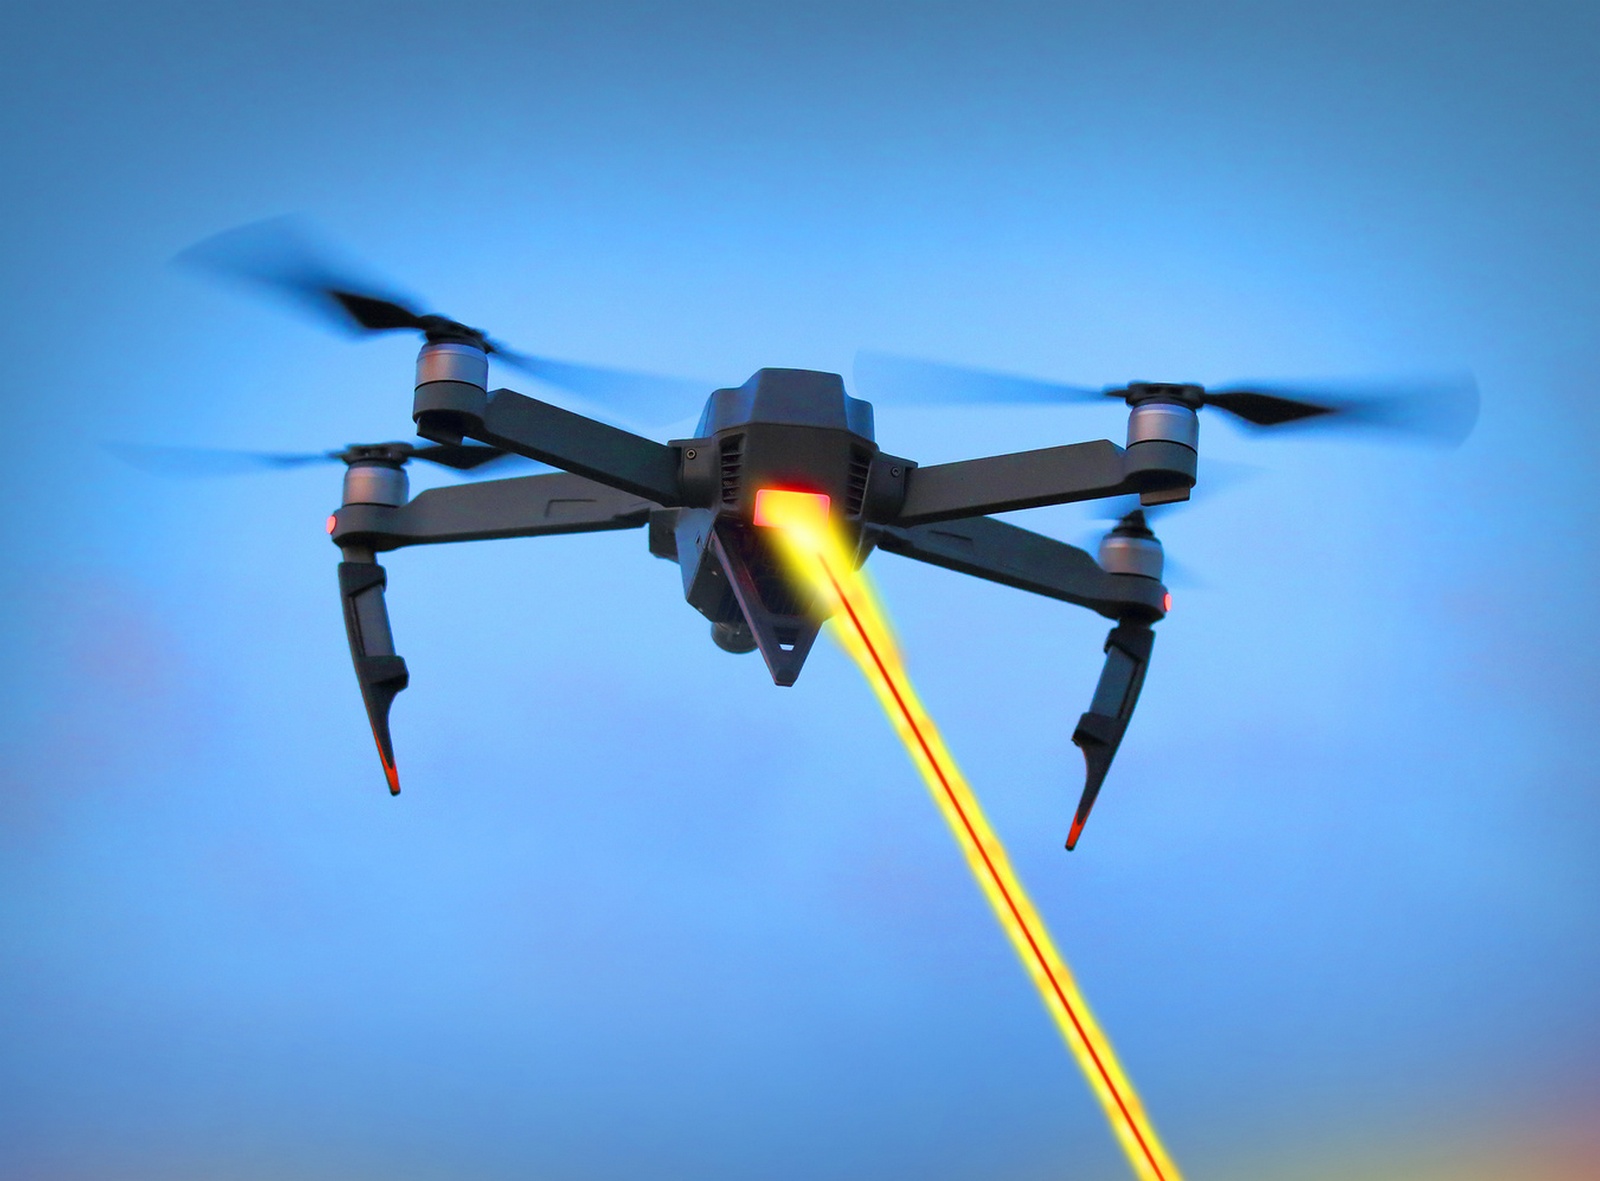 Pouvoir faire voler un drone indéfiniment s’apparente à un graal pour l’armée américaine. © Kletr, Fotolia

